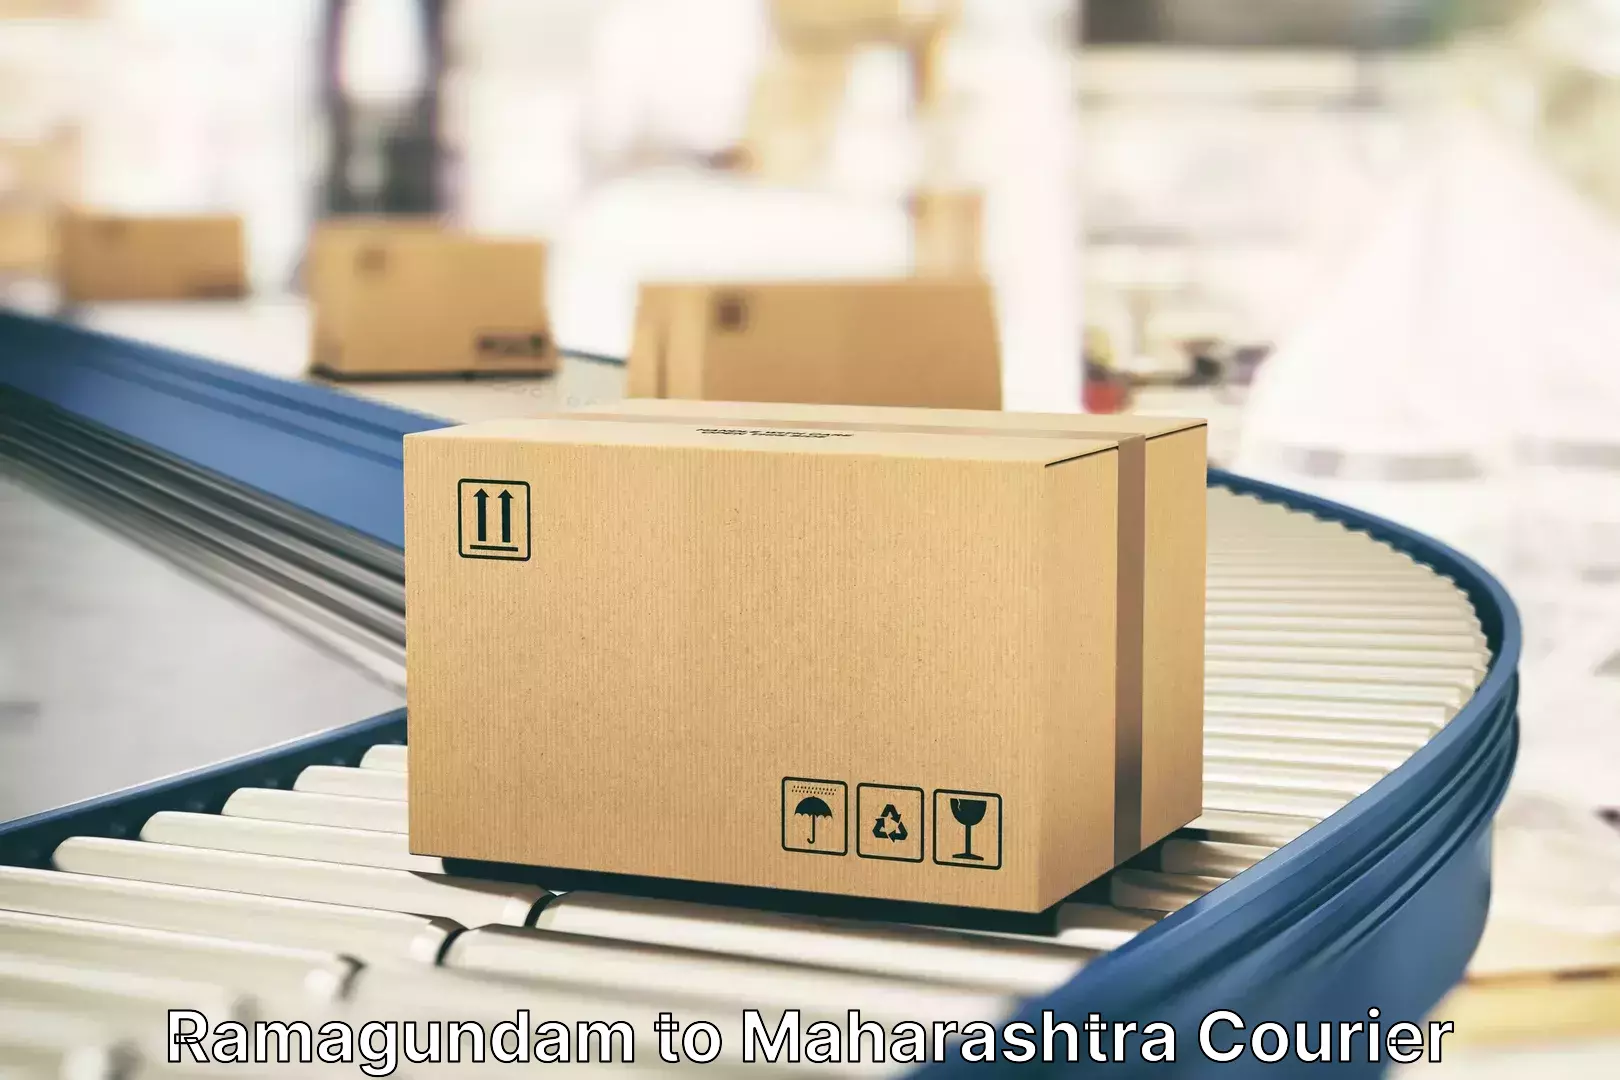 Regional luggage transport Ramagundam to Maharashtra